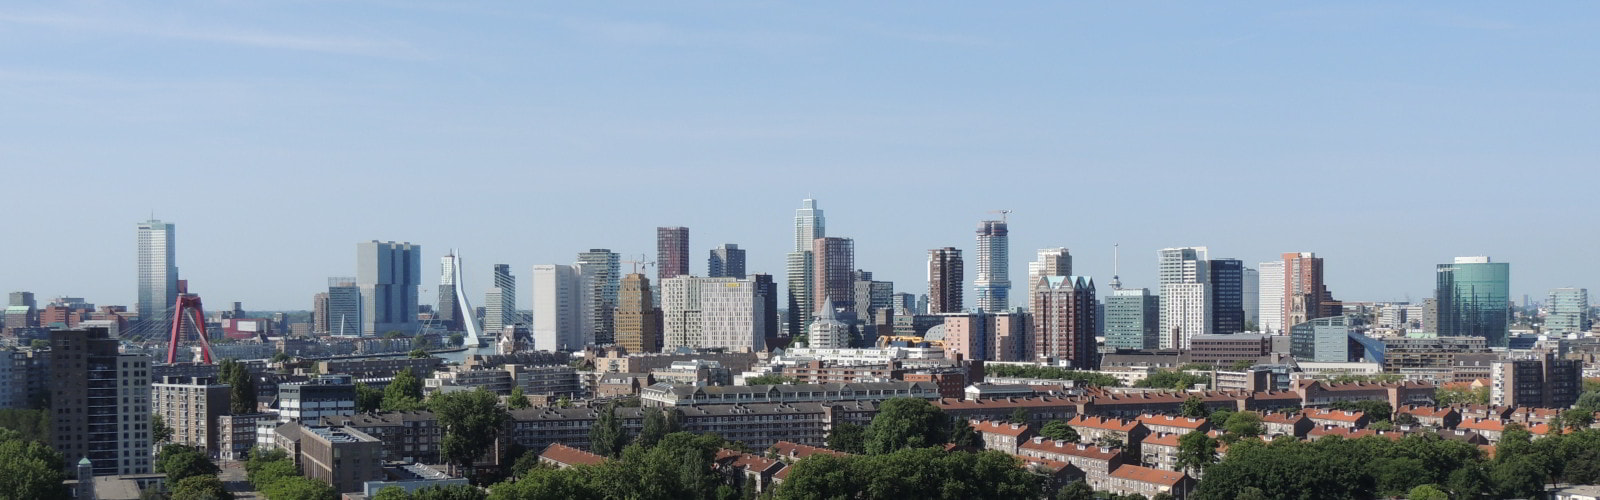 Skyline in Rotterdam